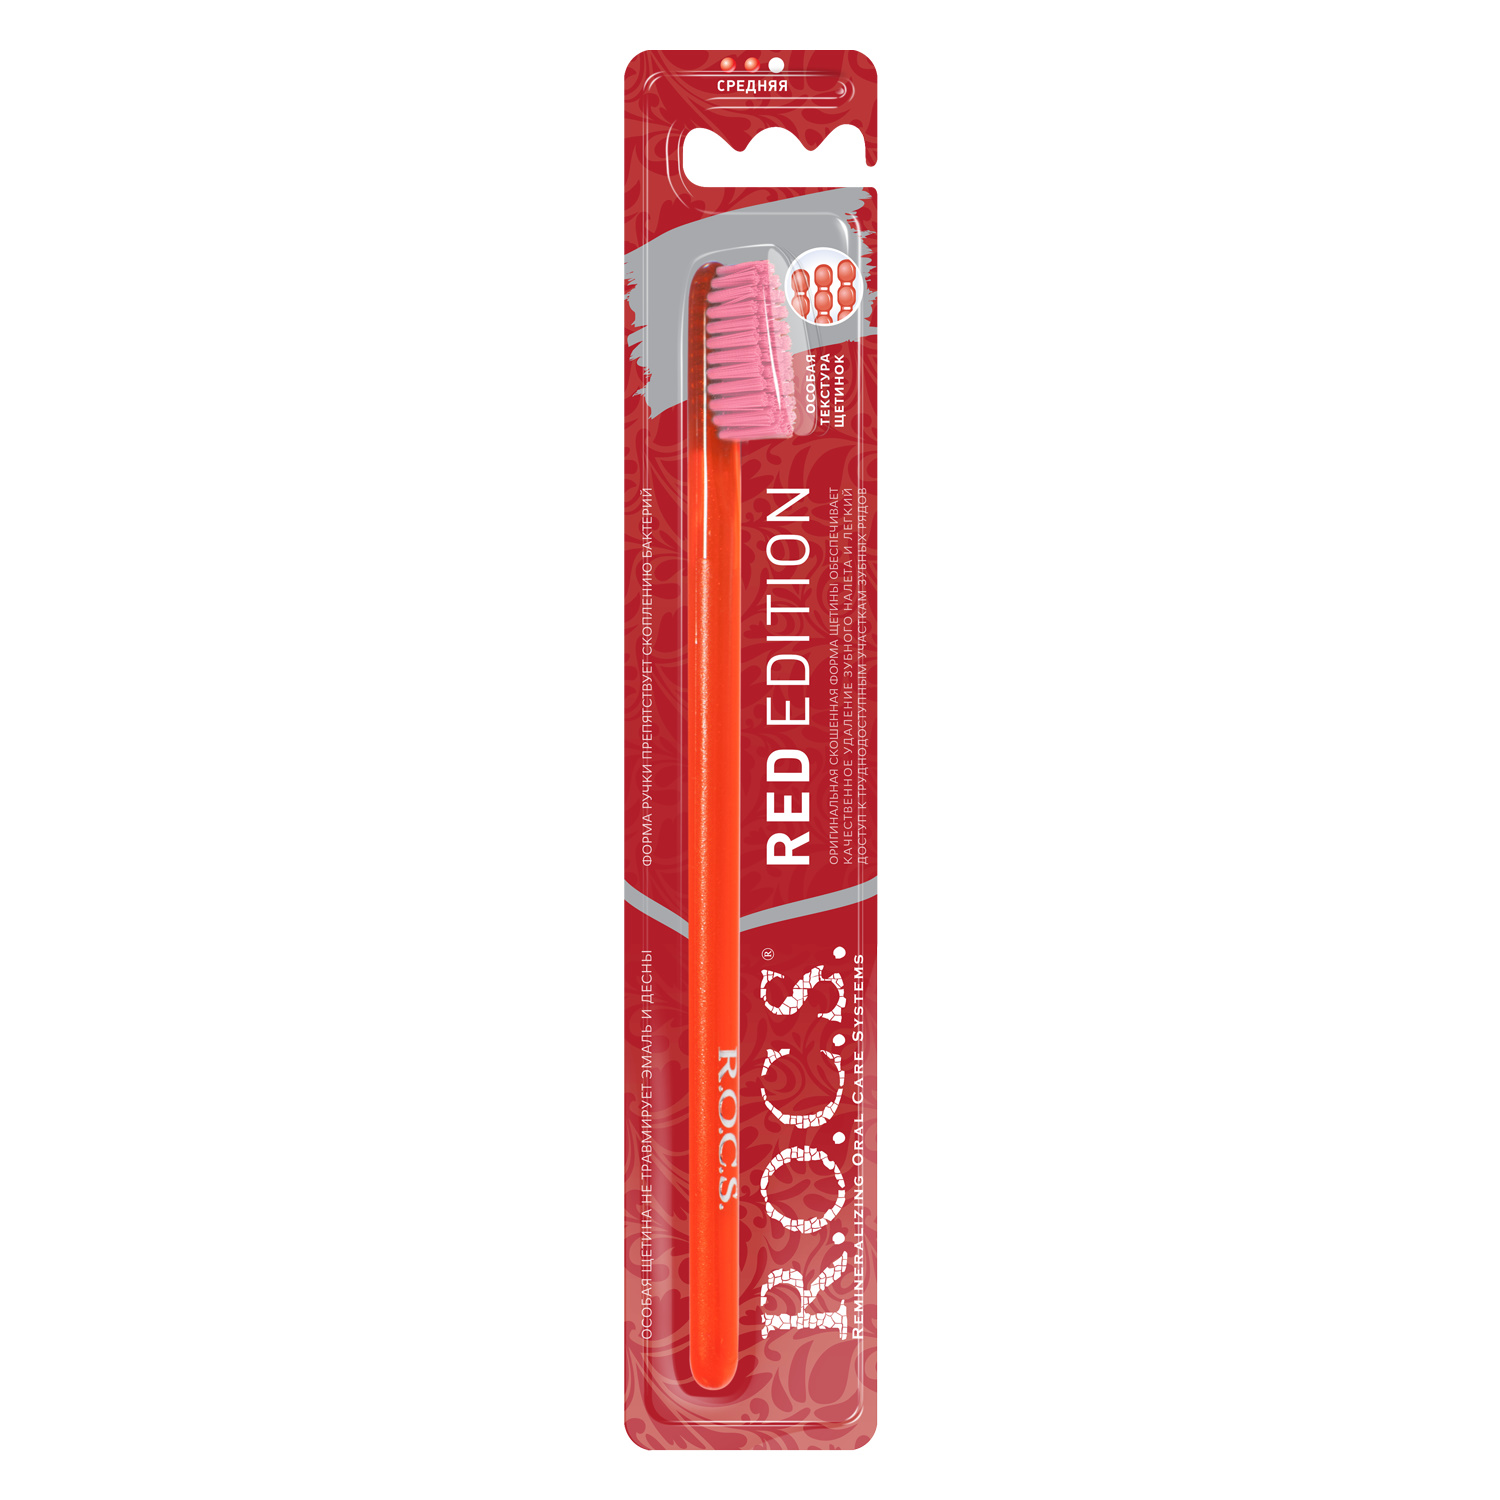 Зубная щетка R.O.C.S. Red Edition Classic цвет красно-розовый r o c s red edition classic зубная щетка средняя